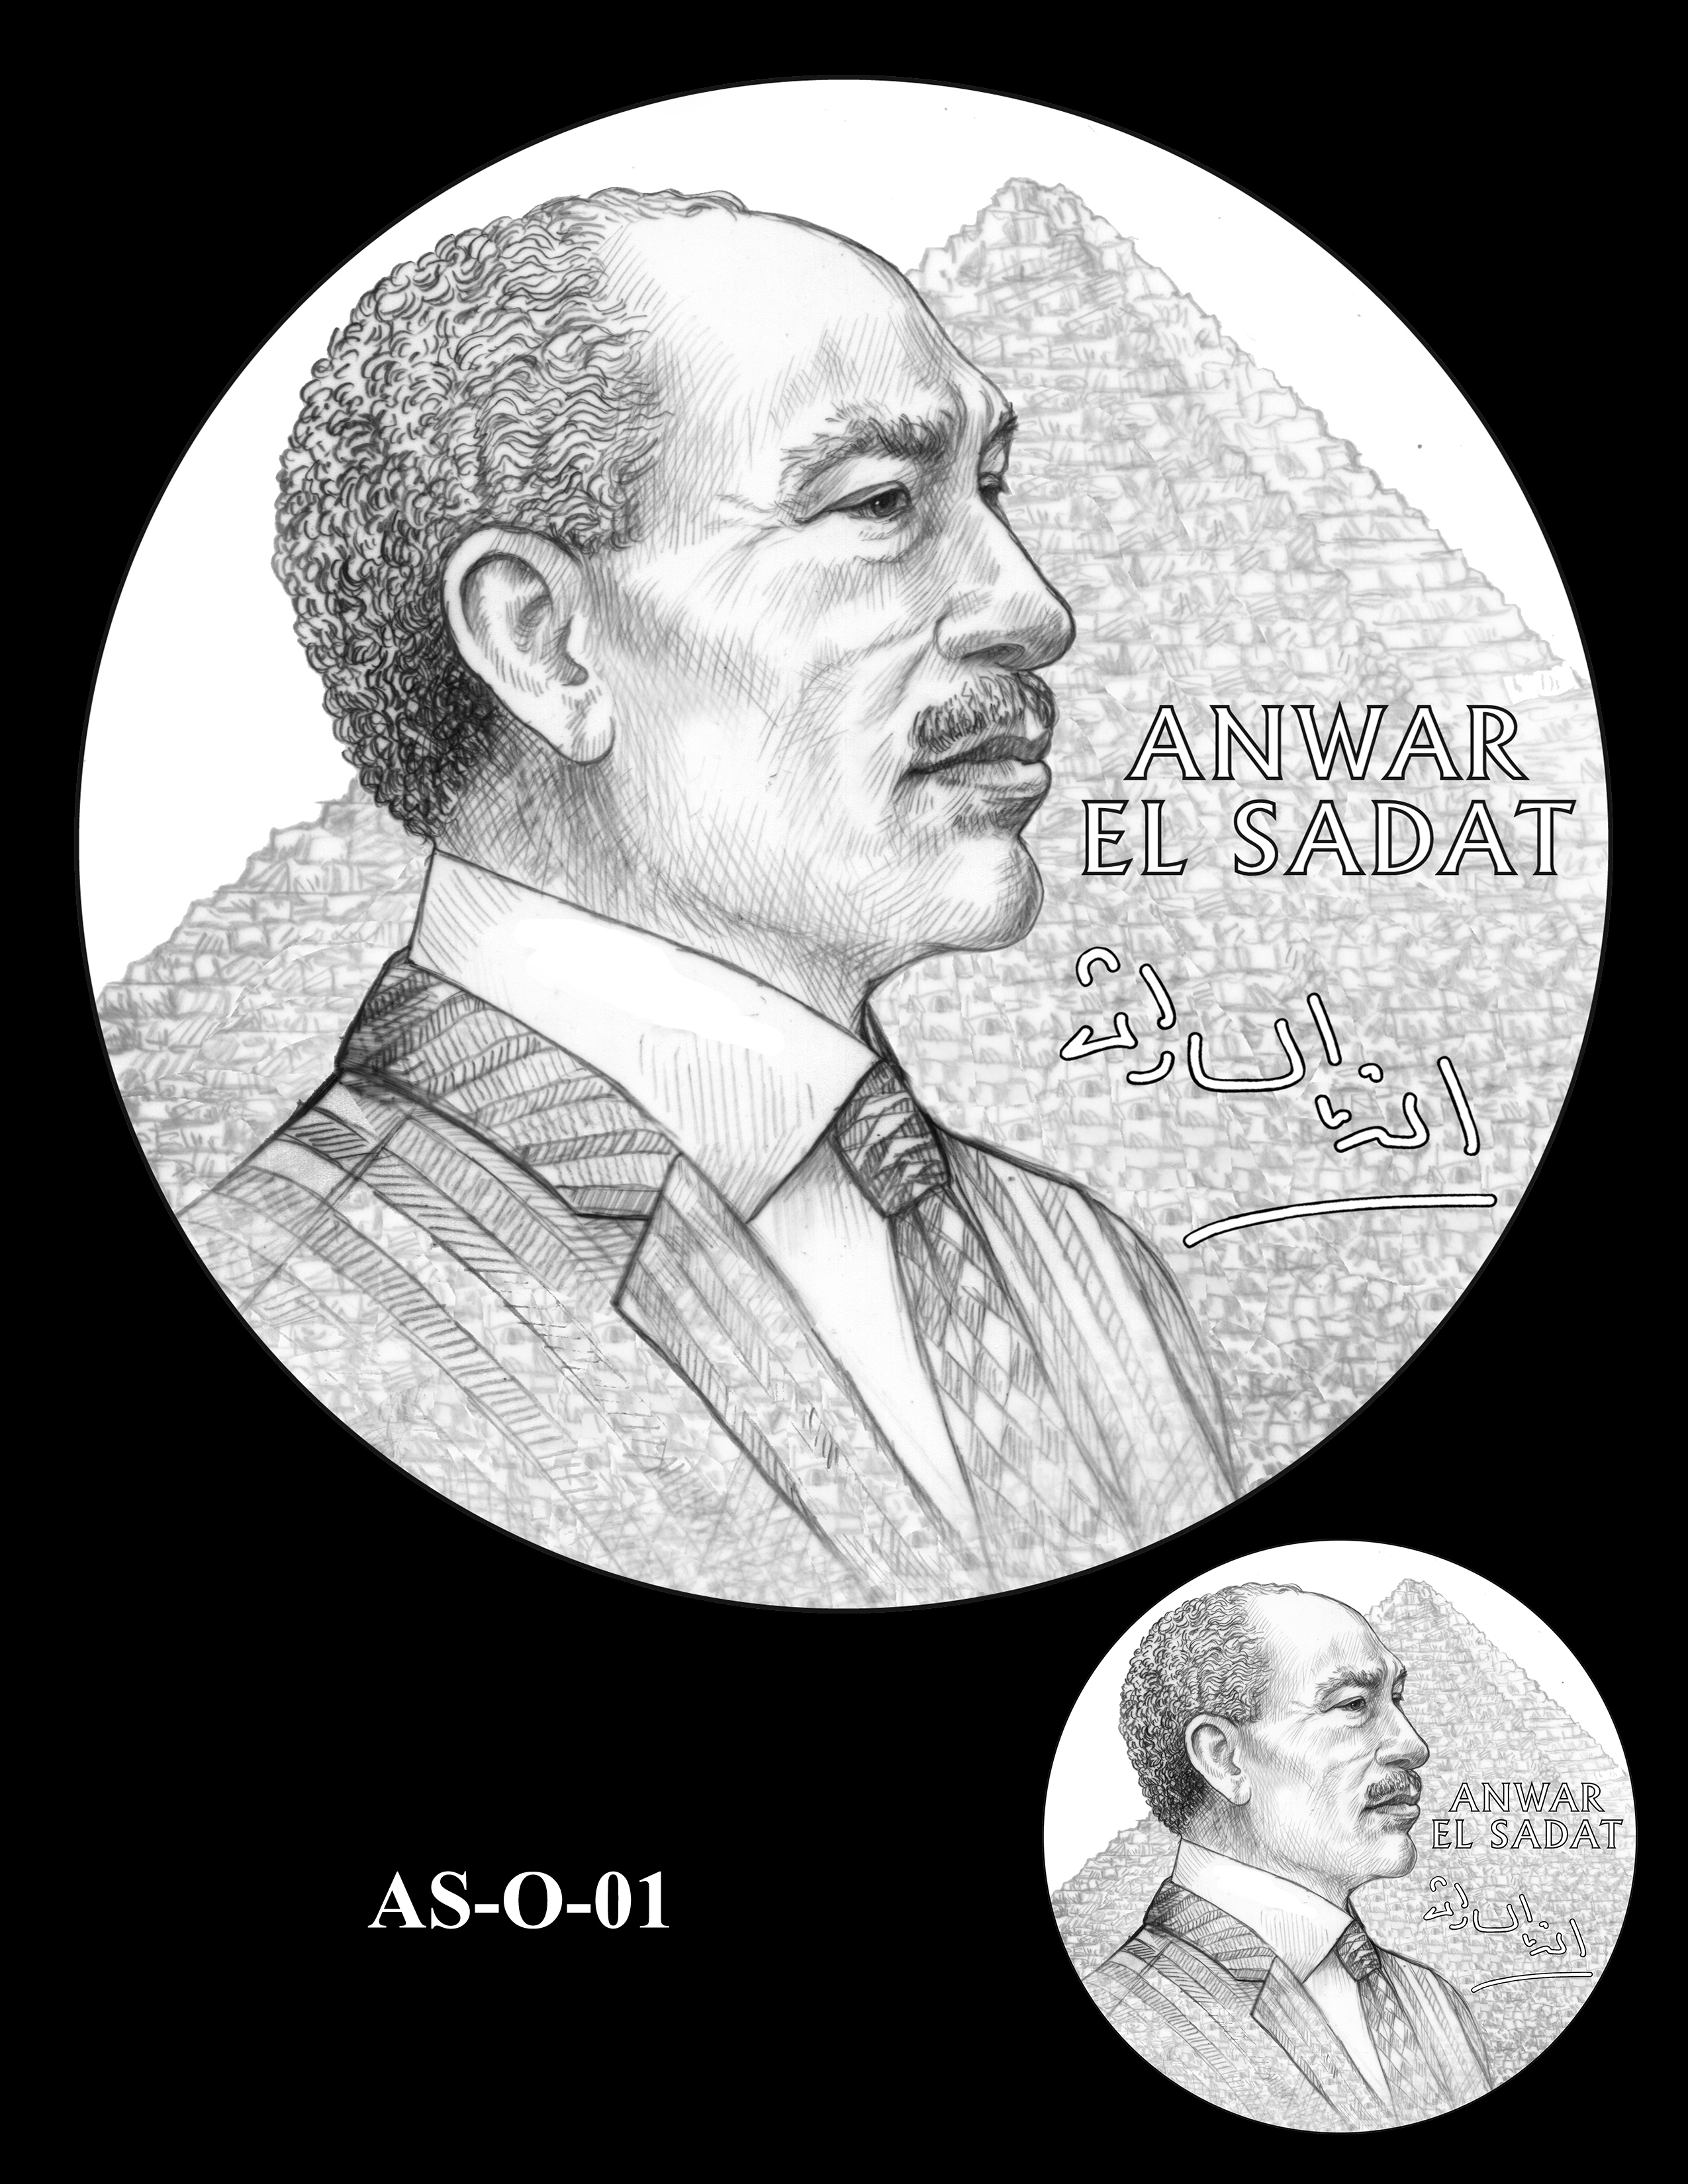 AS-O-01 -- Anwar El Sadat CGM Obverse